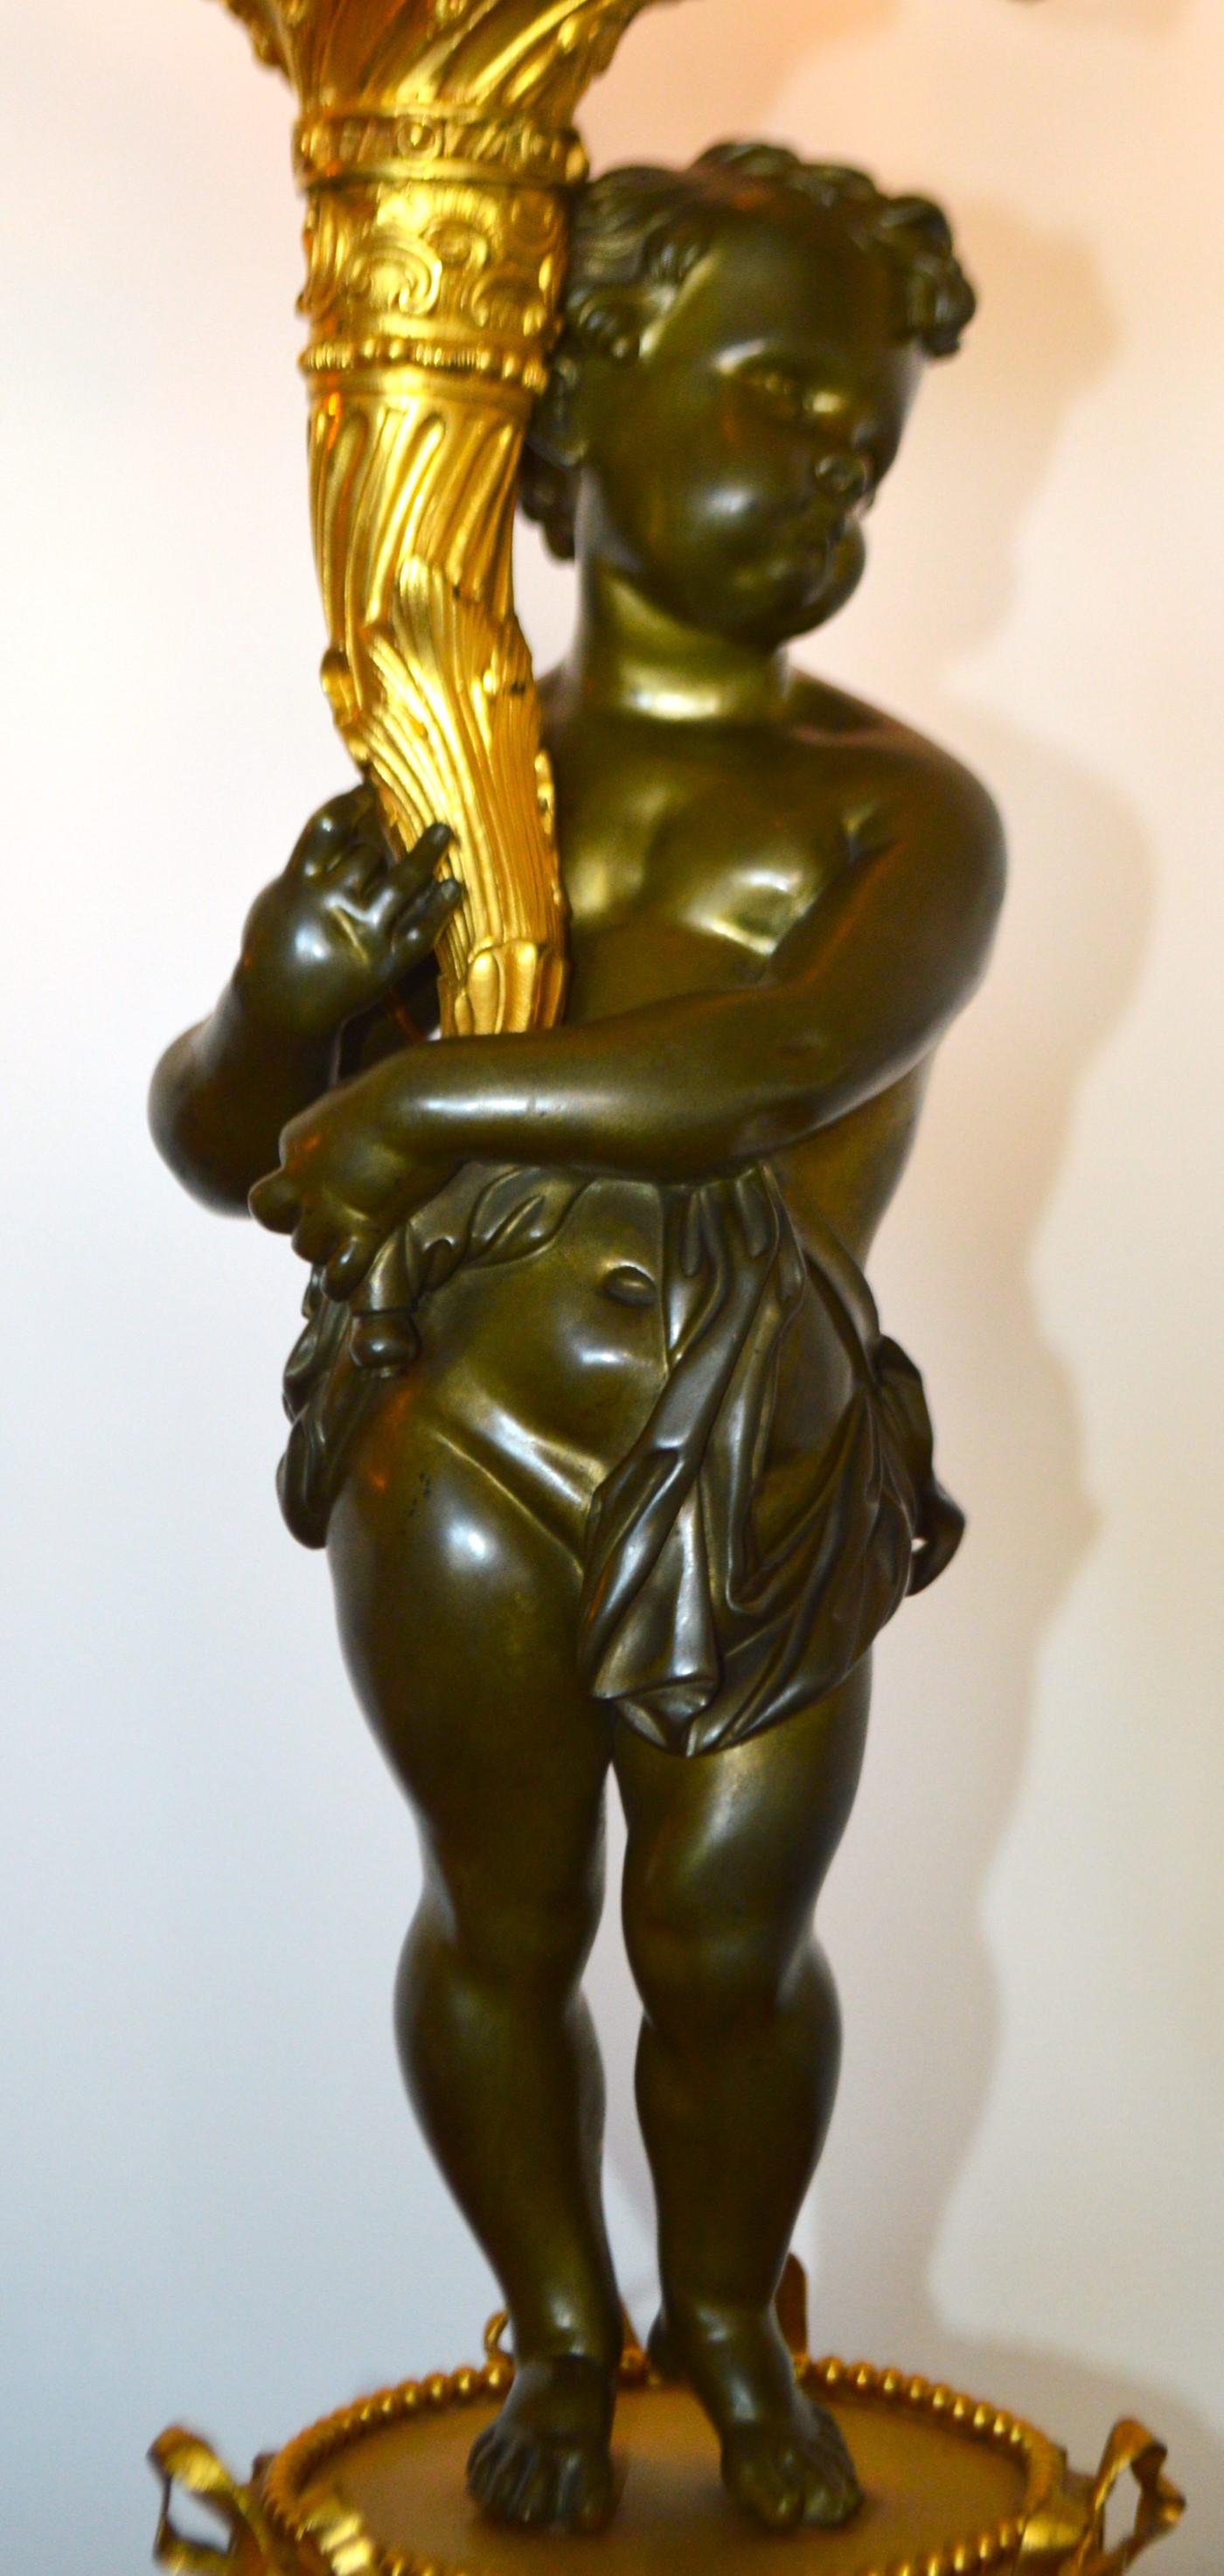 Paire de candélabres de style Louis XVI en bronze doré de très belle qualité. Cette paire est à la fois décorative et fonctionnelle  depuis son électrification. La base est en bronze massif doré avec de délicates perles et de magnifiques nœuds. Les